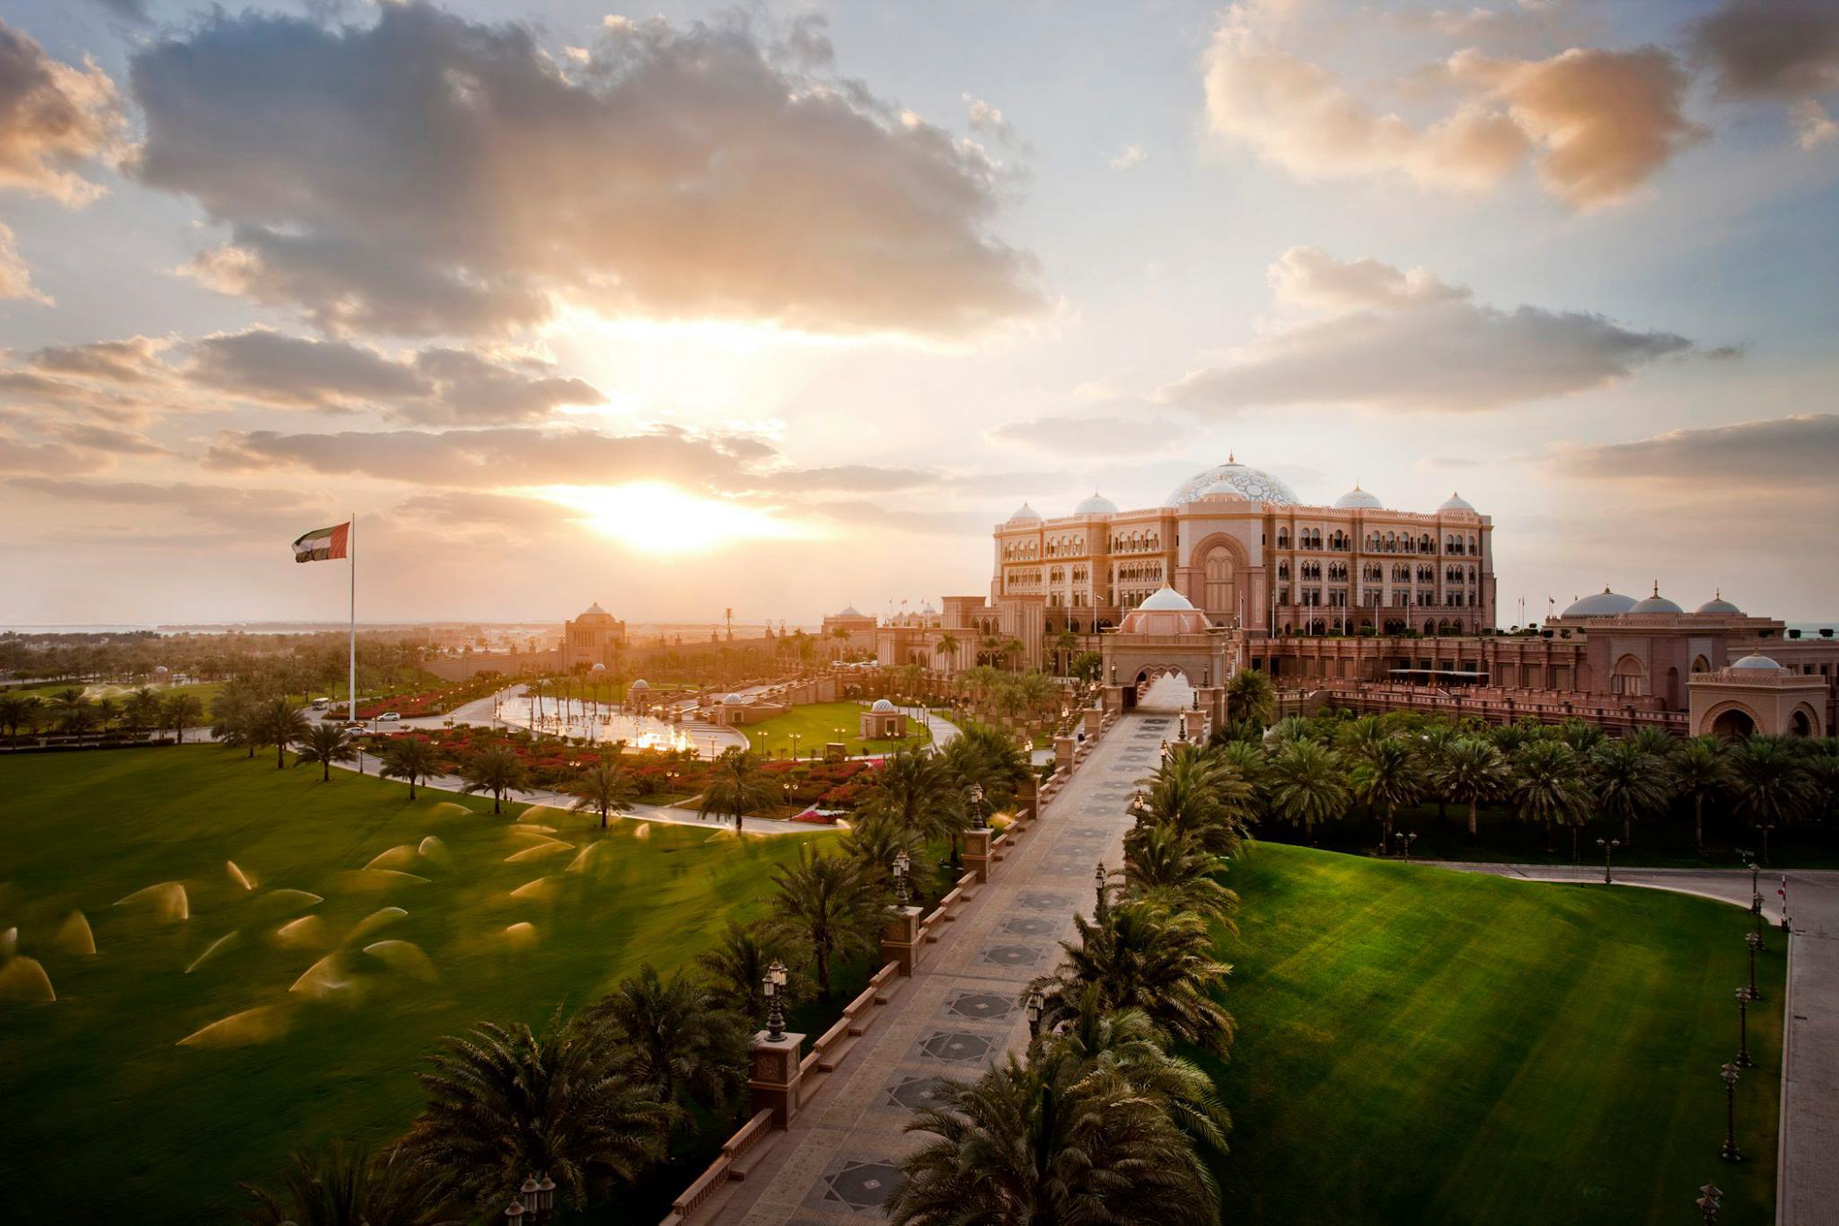 Emirates Palace Abu Dhabi Hotel – Abu Dhabi, UAE – Sunset